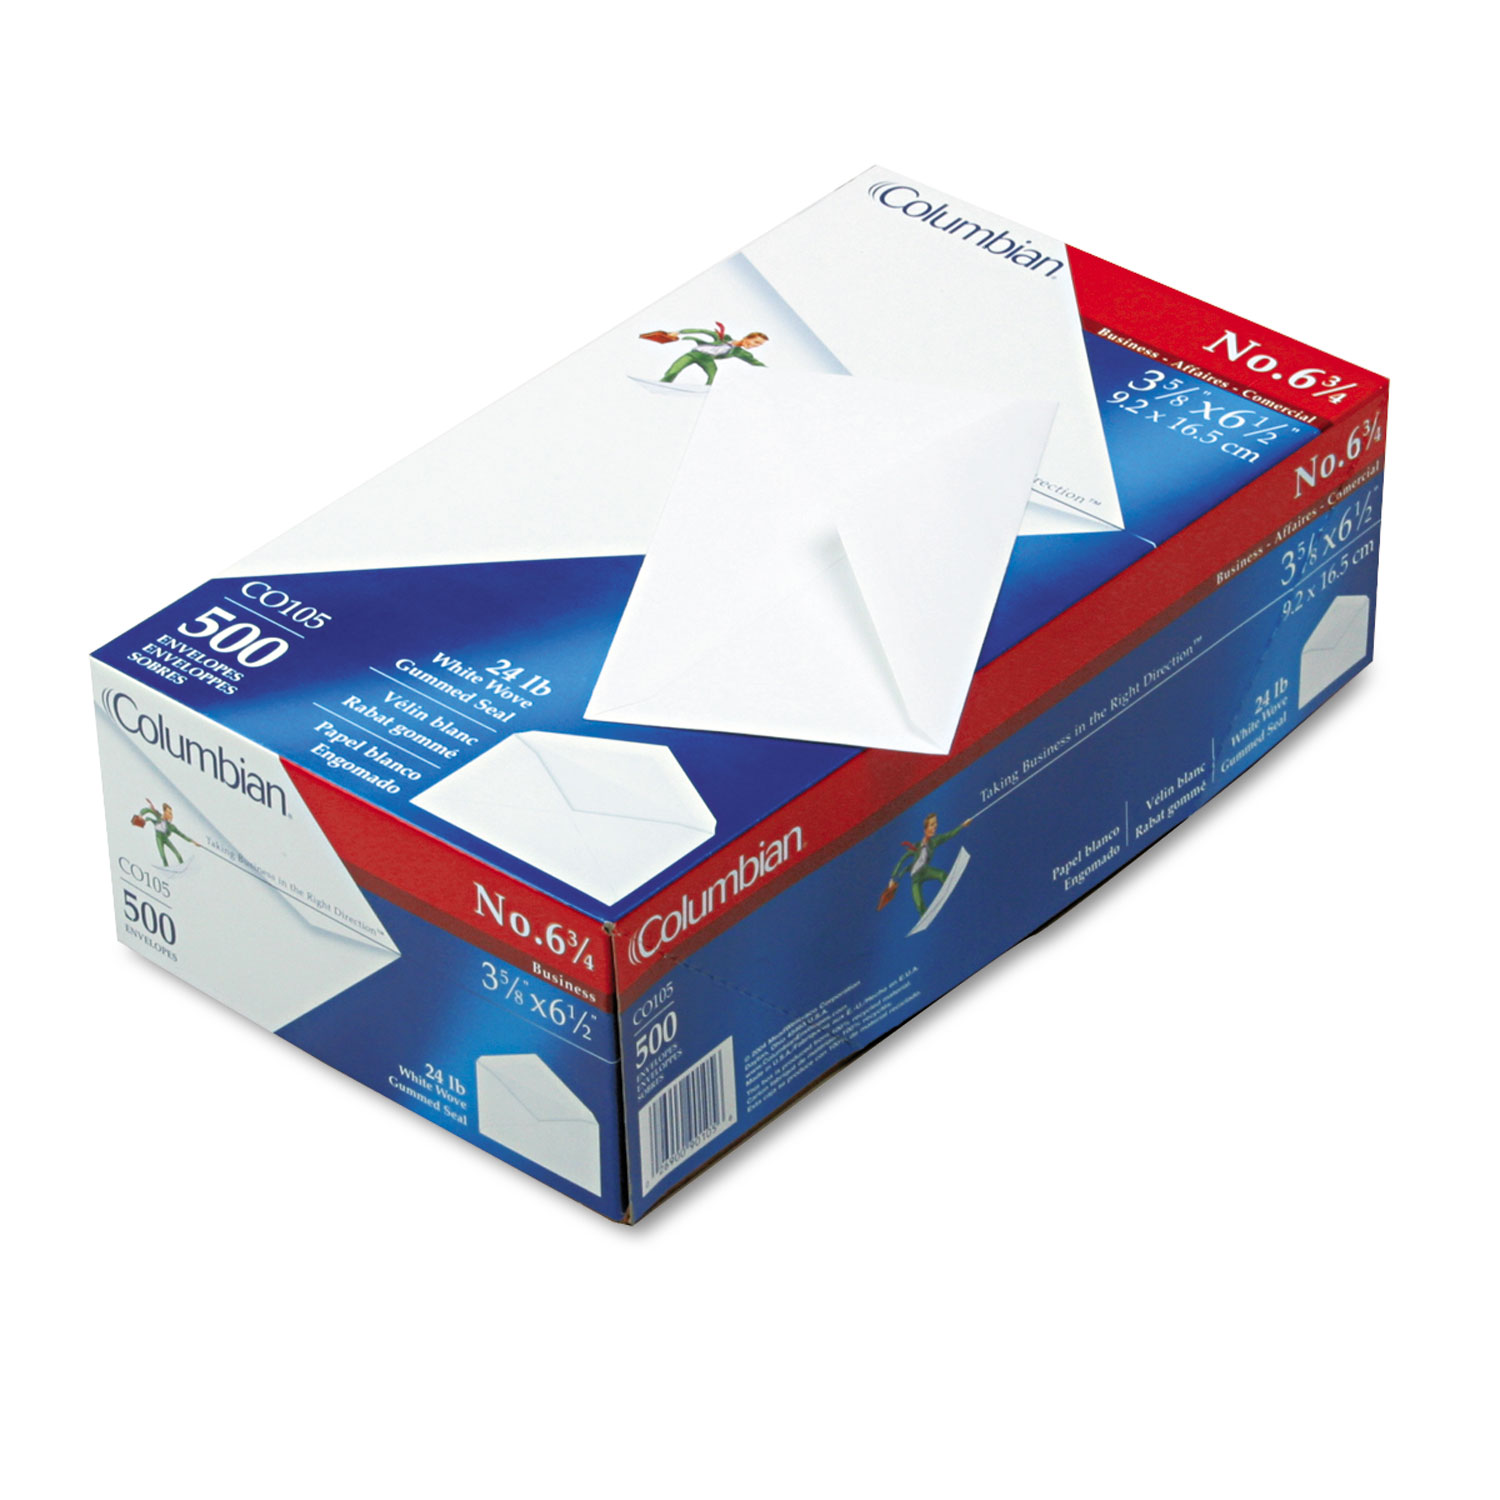 Gummed Seal Business Envelope, #6 3/4, 3 5/8 x 6 1/2, White, 500/Box